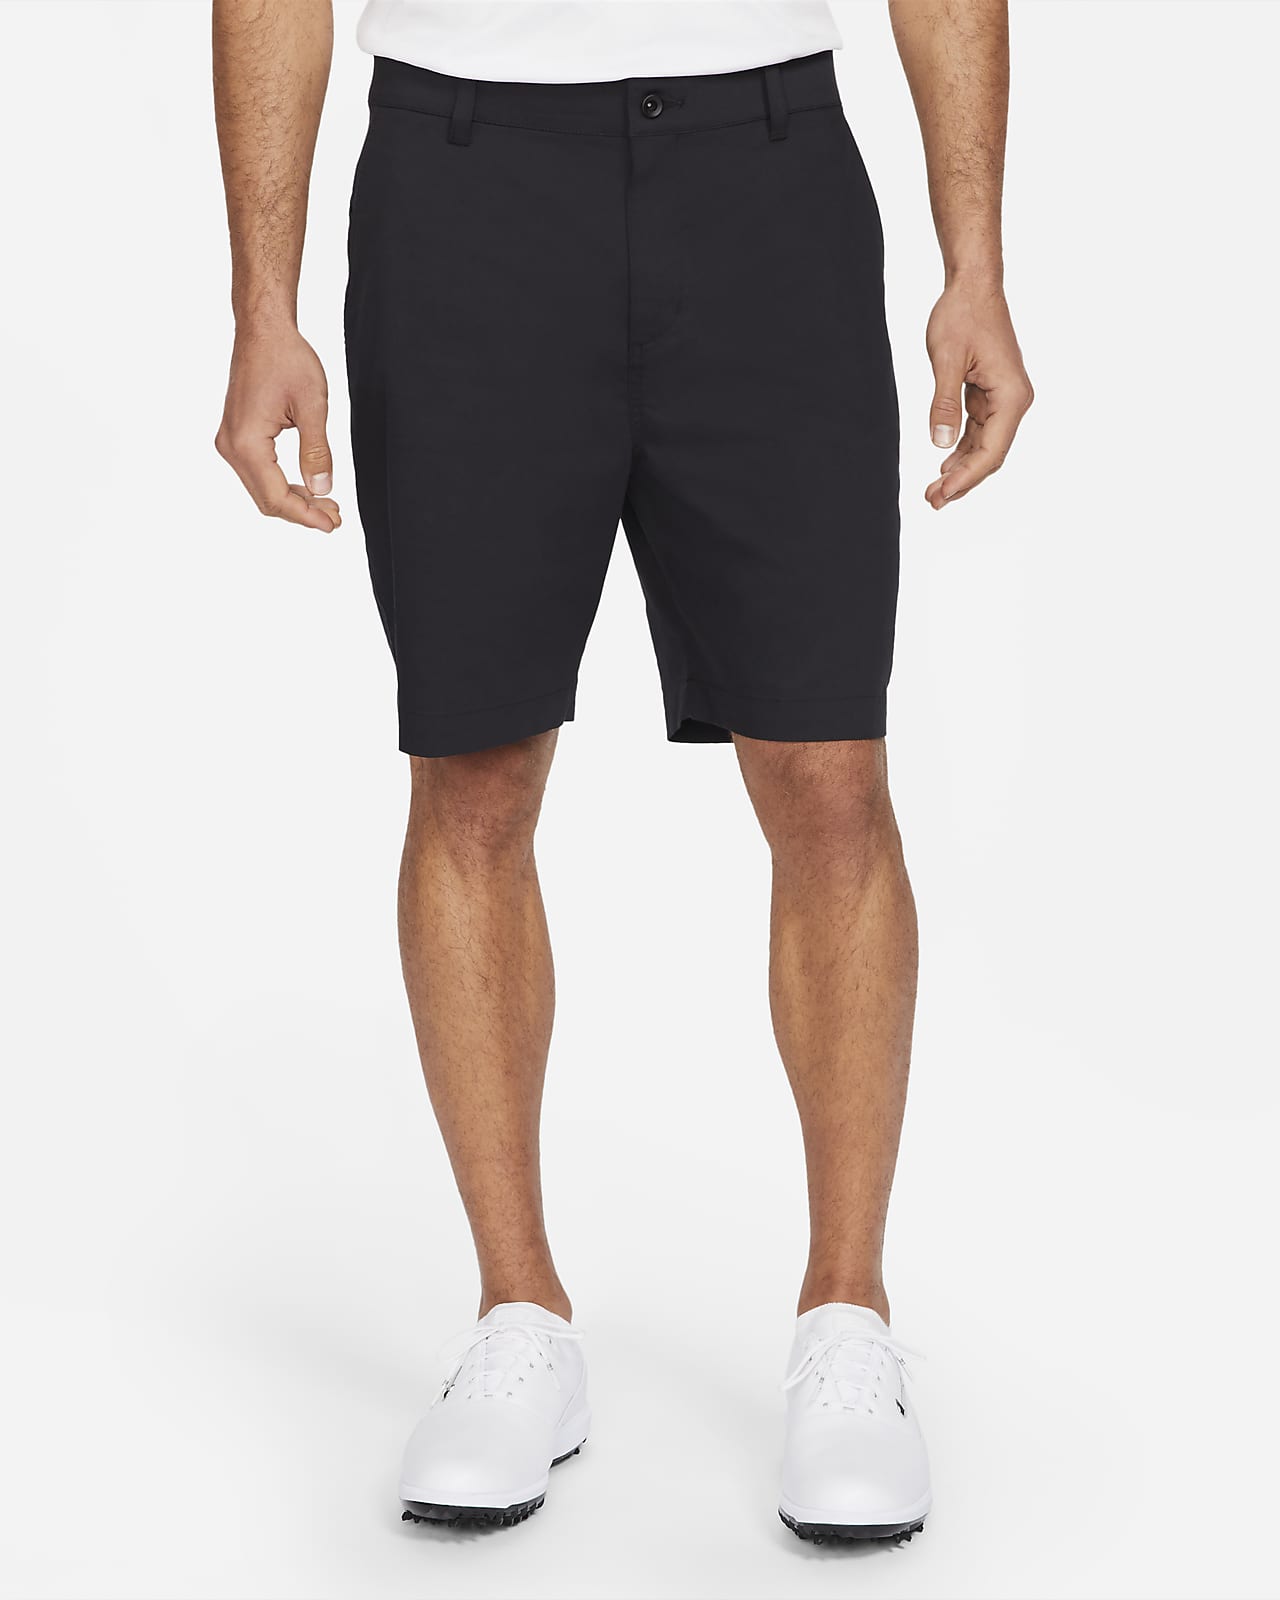 Nike Dri-FIT UV golfchinoshorts til herre (23 cm)